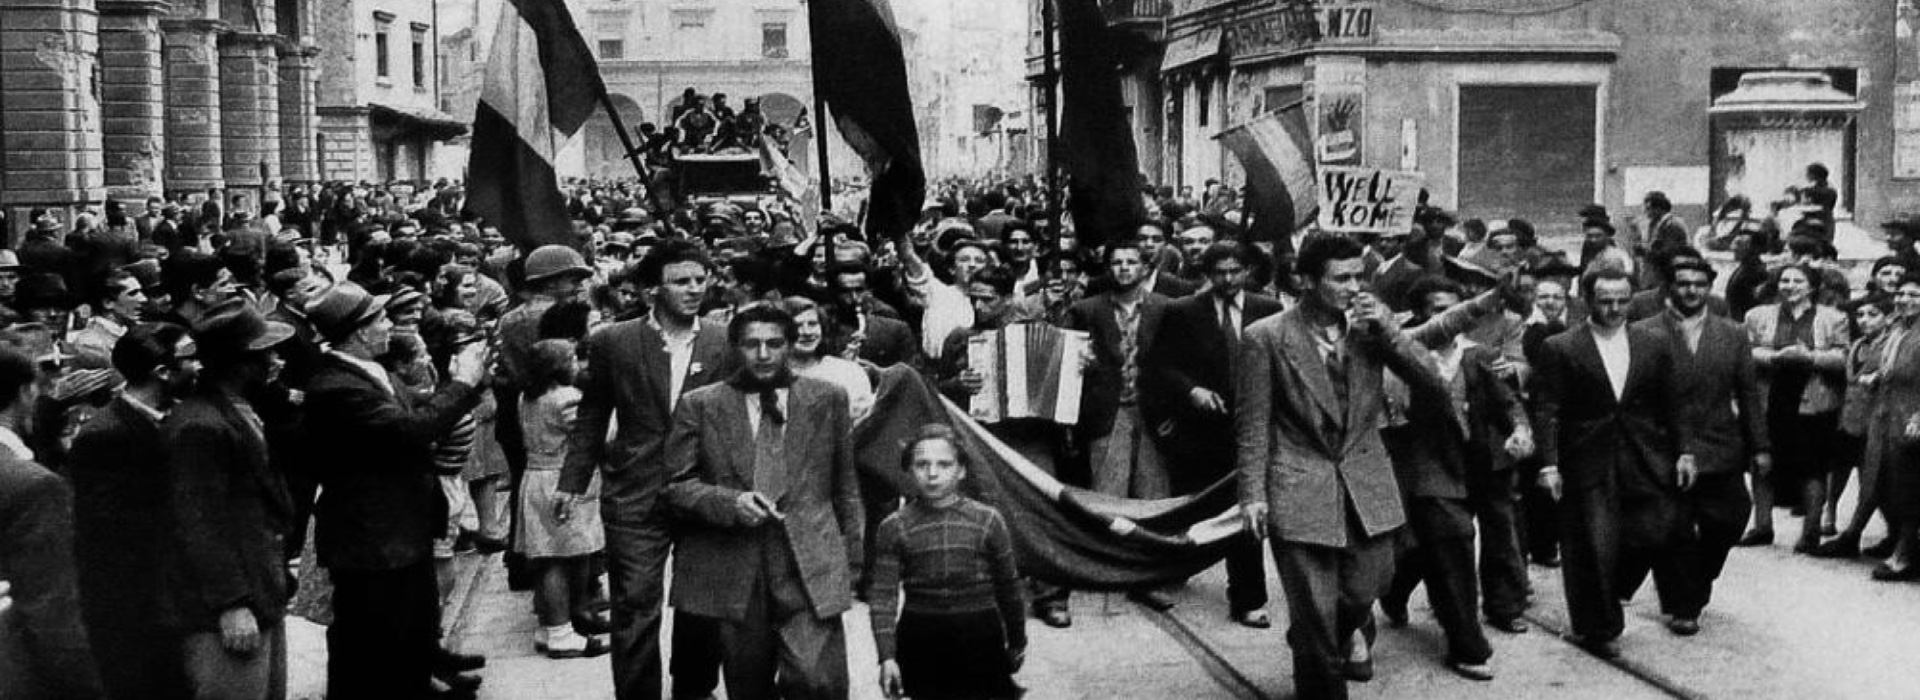 25 aprile, festeggiamo la liberazione dell'Italia dal nazifascismo. Cosa rimane da combattere oggi?